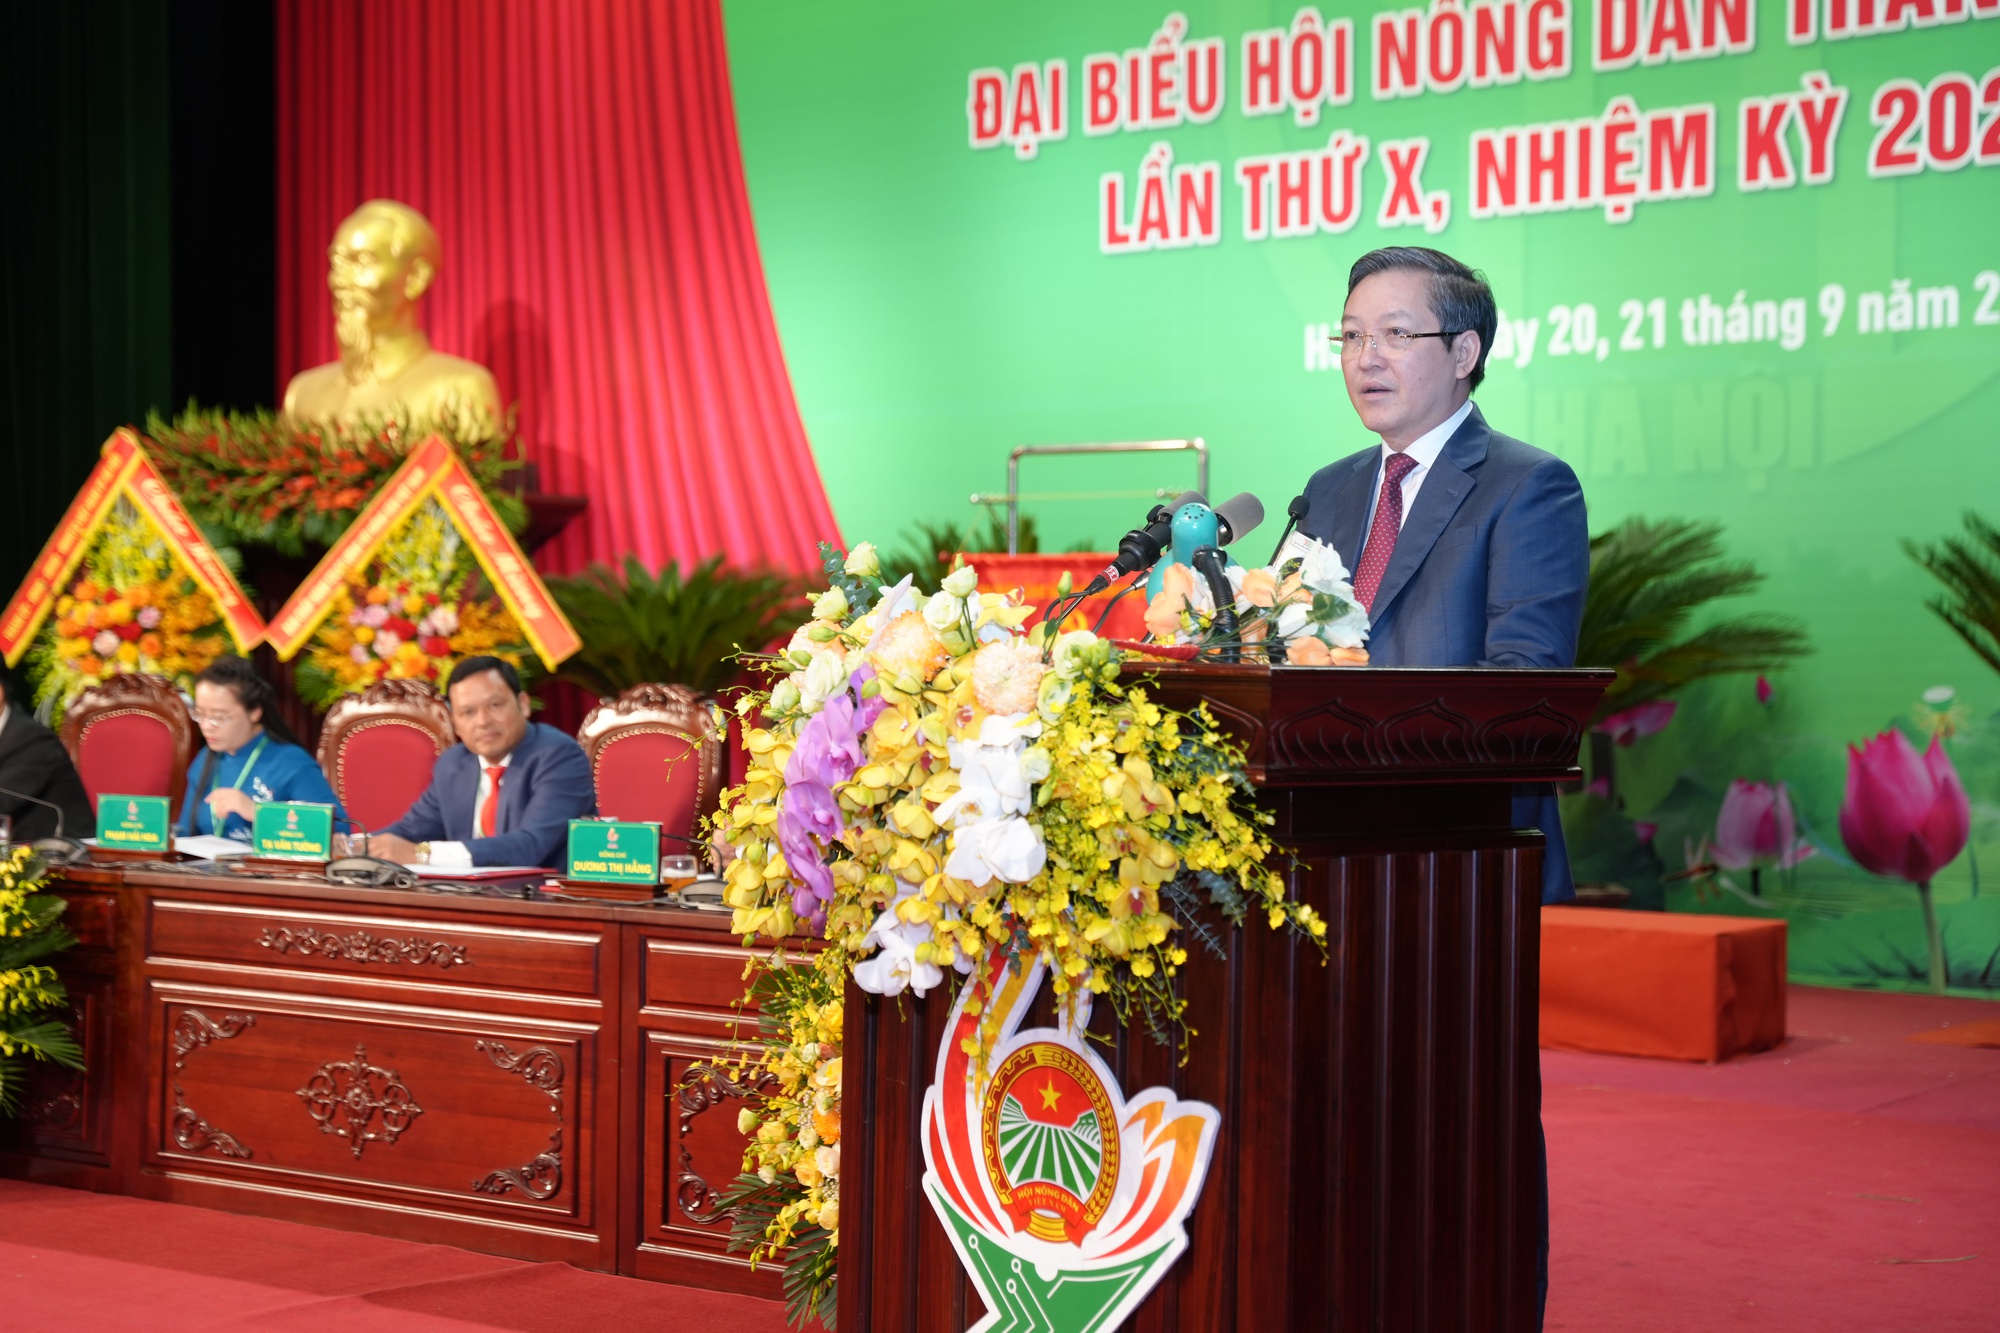 Bí thư Thành uỷ Hà Nội, Chủ tịch Hội NDVN dự, chỉ đạo Đại hội đại biểu Hội Nông dân TP Hà Nội  - Ảnh 3.